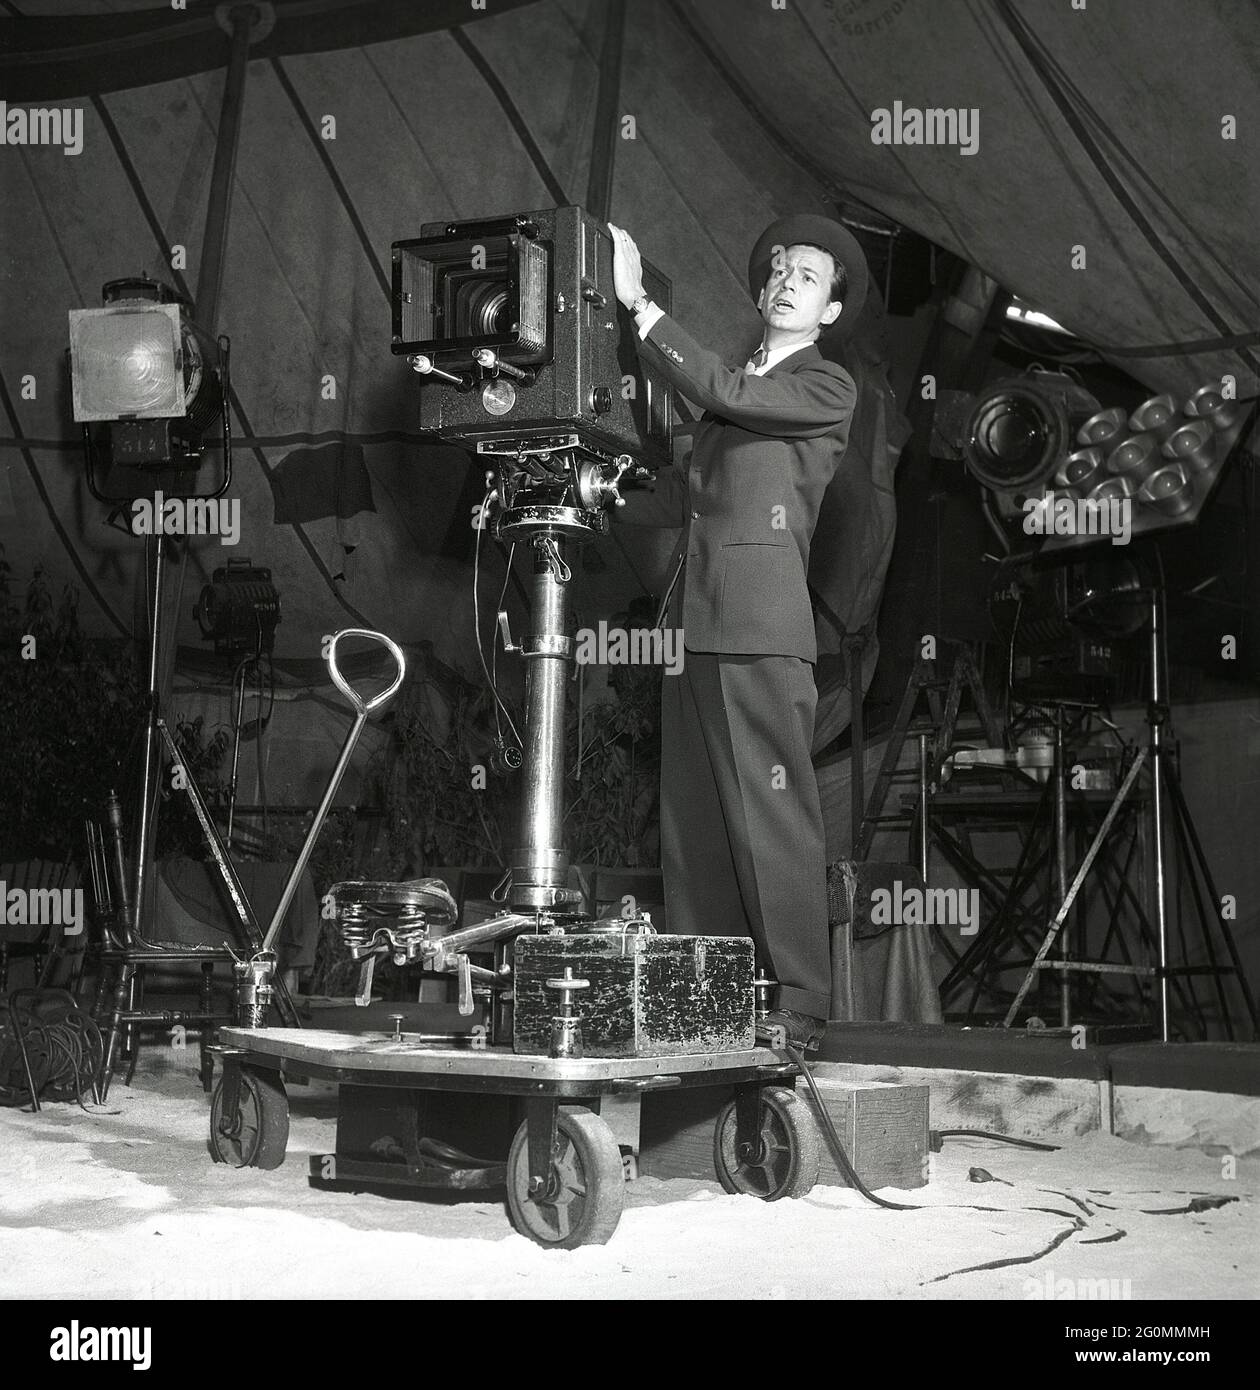 Dreharbeiten in den 1950er Jahren. Filmregisseur und Schauspieler Stig Olin, 1920-2008, im Studio mit einer Filmkamera fotografiert. Schweden 1953 Ref. BM53-4 Stockfoto